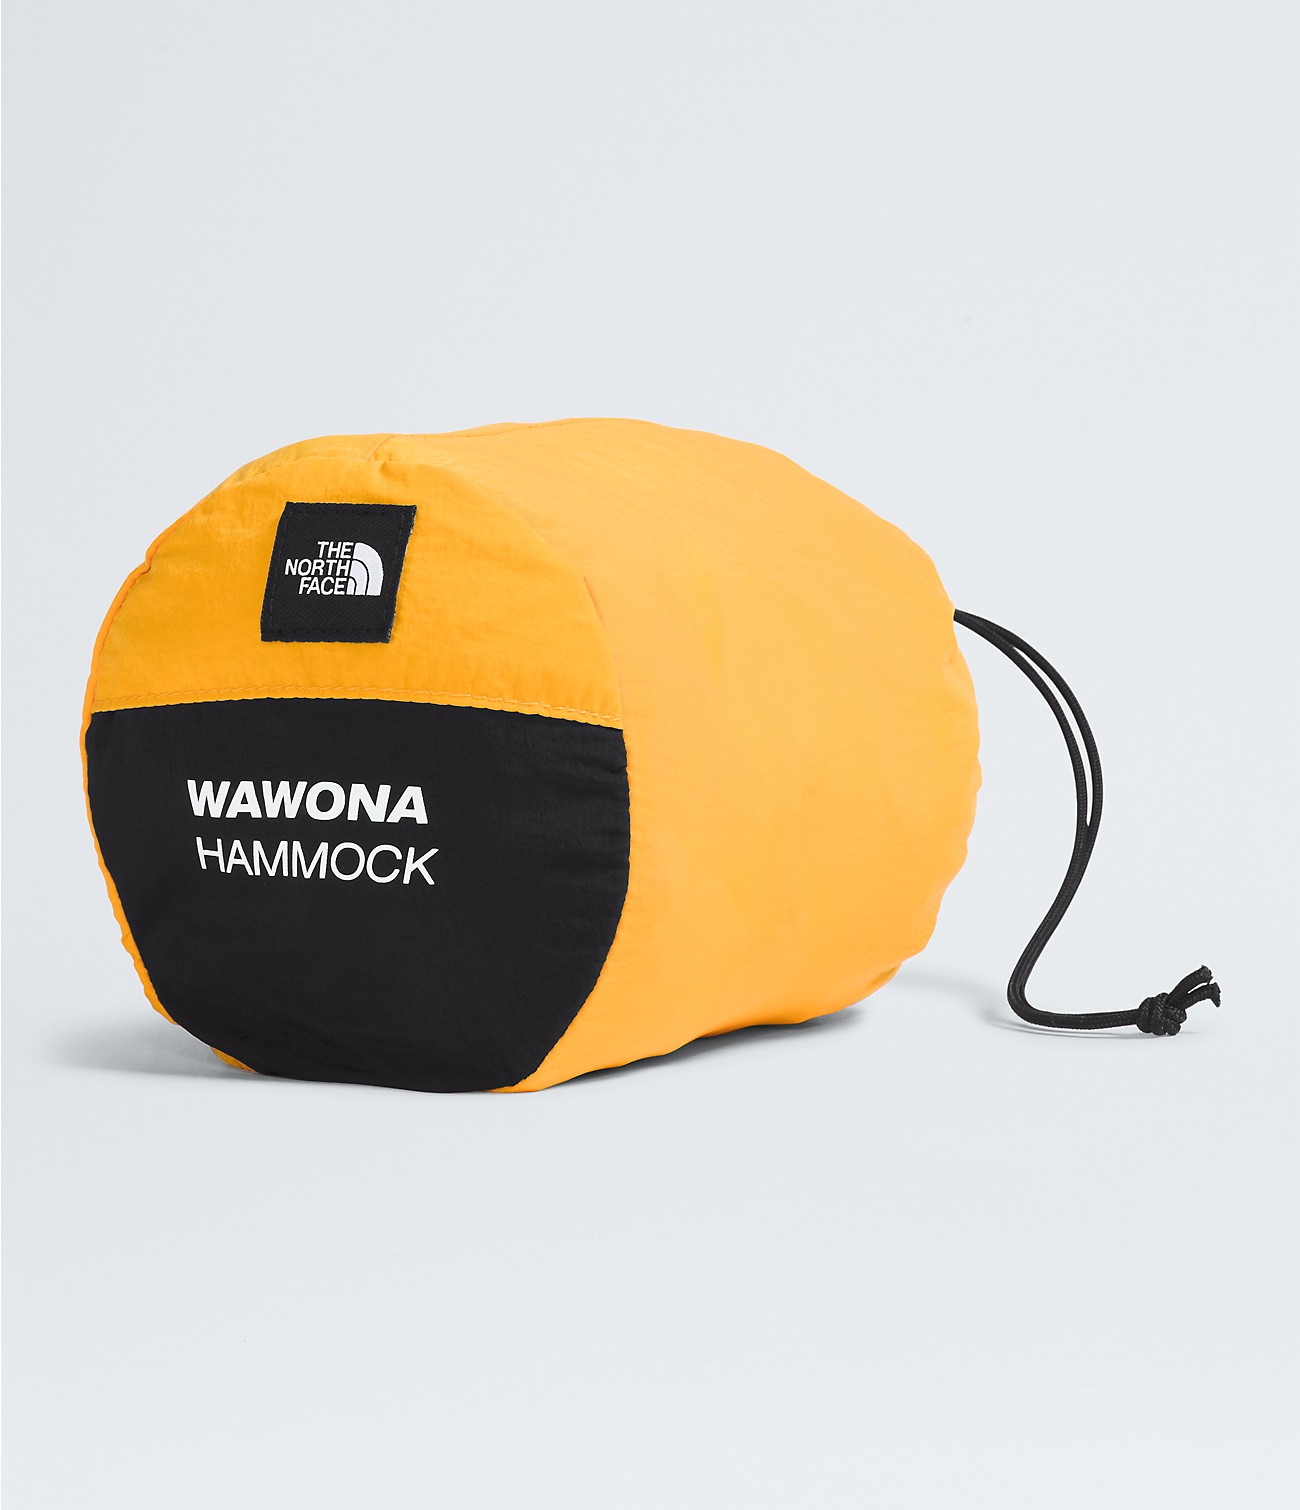 Wawona Hammock | The North Face